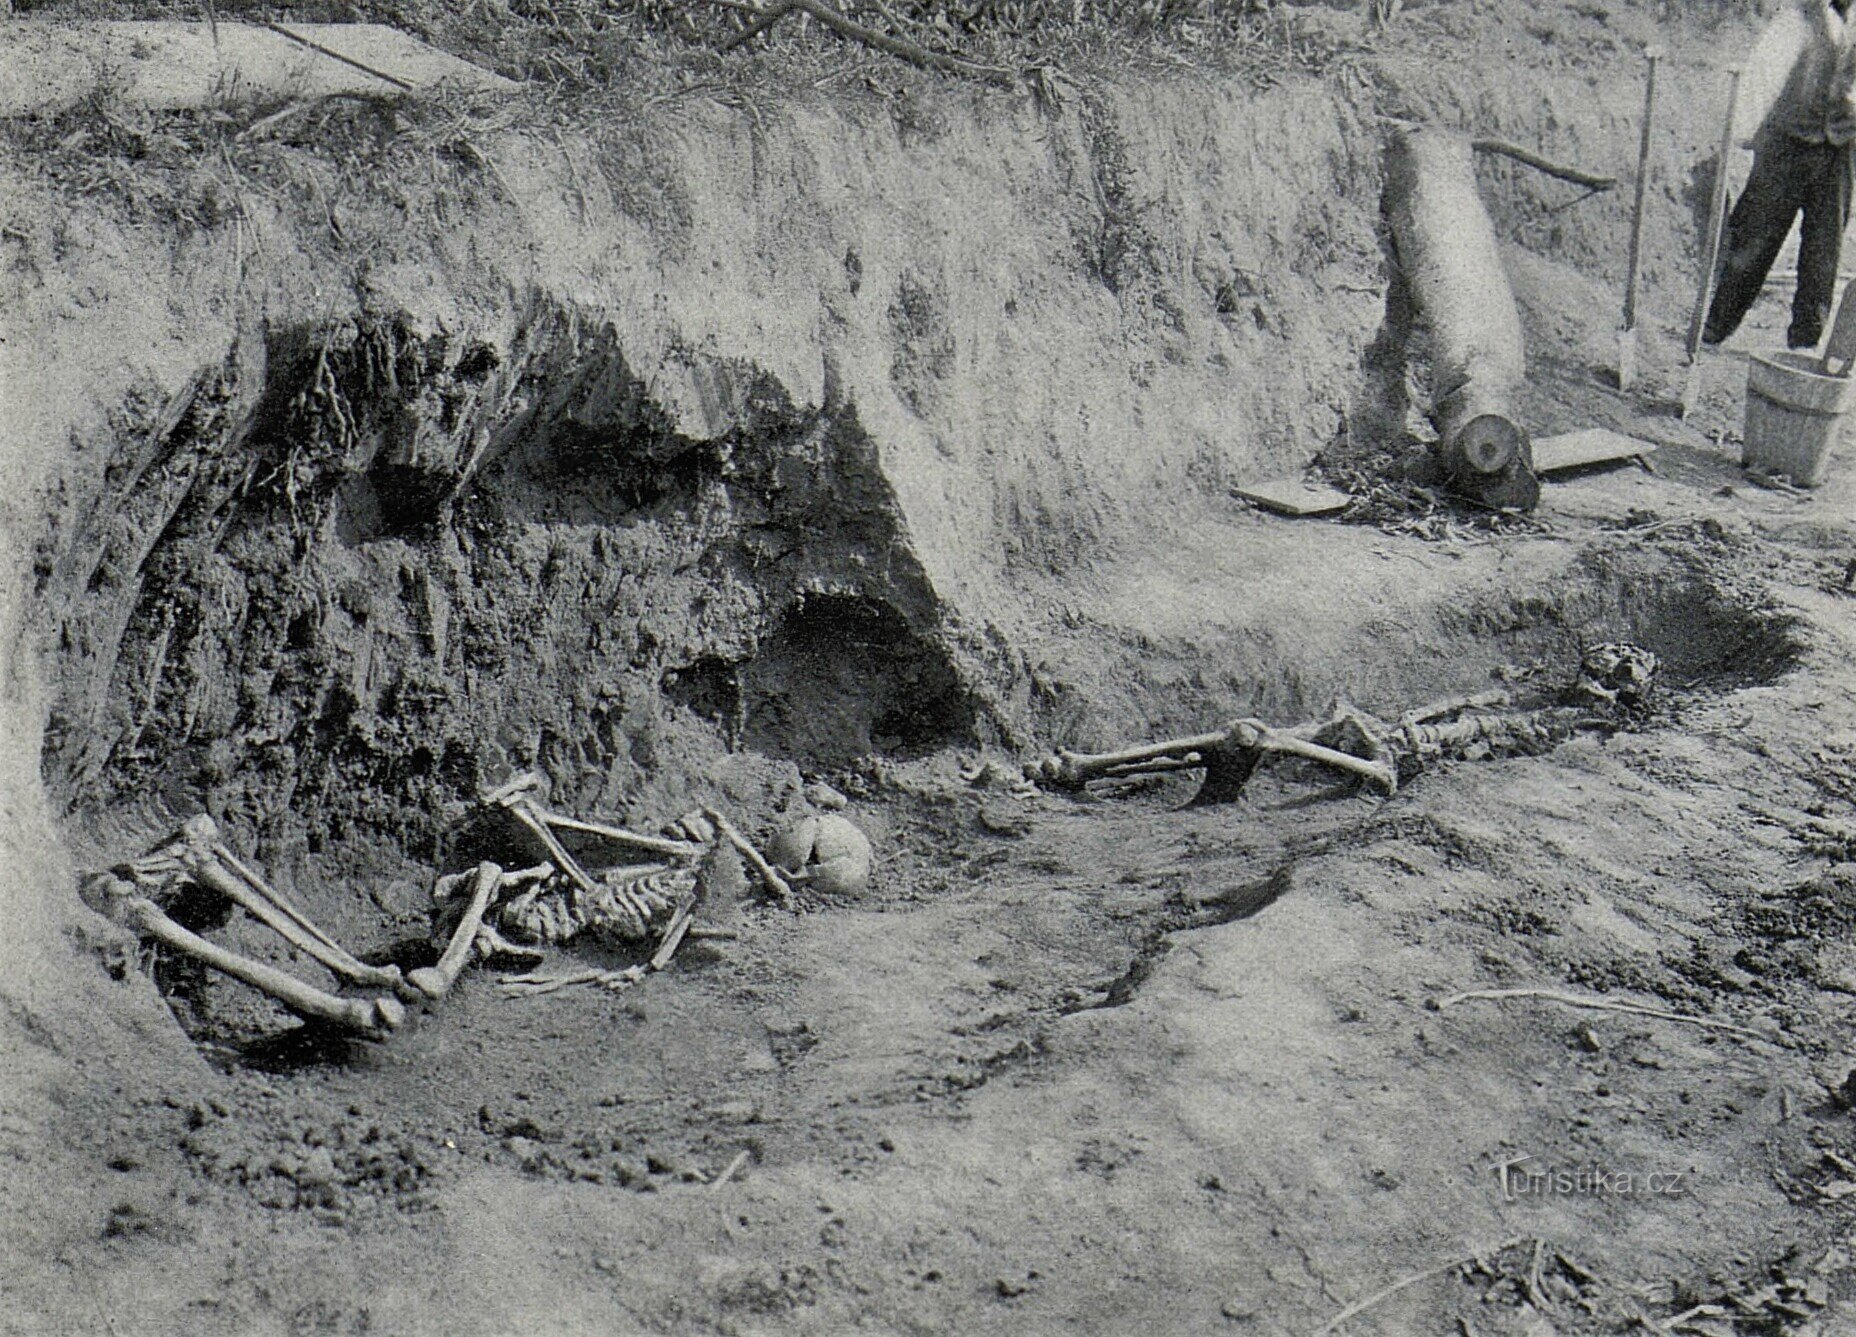 Việc phát hiện ra các bộ xương trong một trong những xưởng gạch ở Svobodné Dvory (1909)